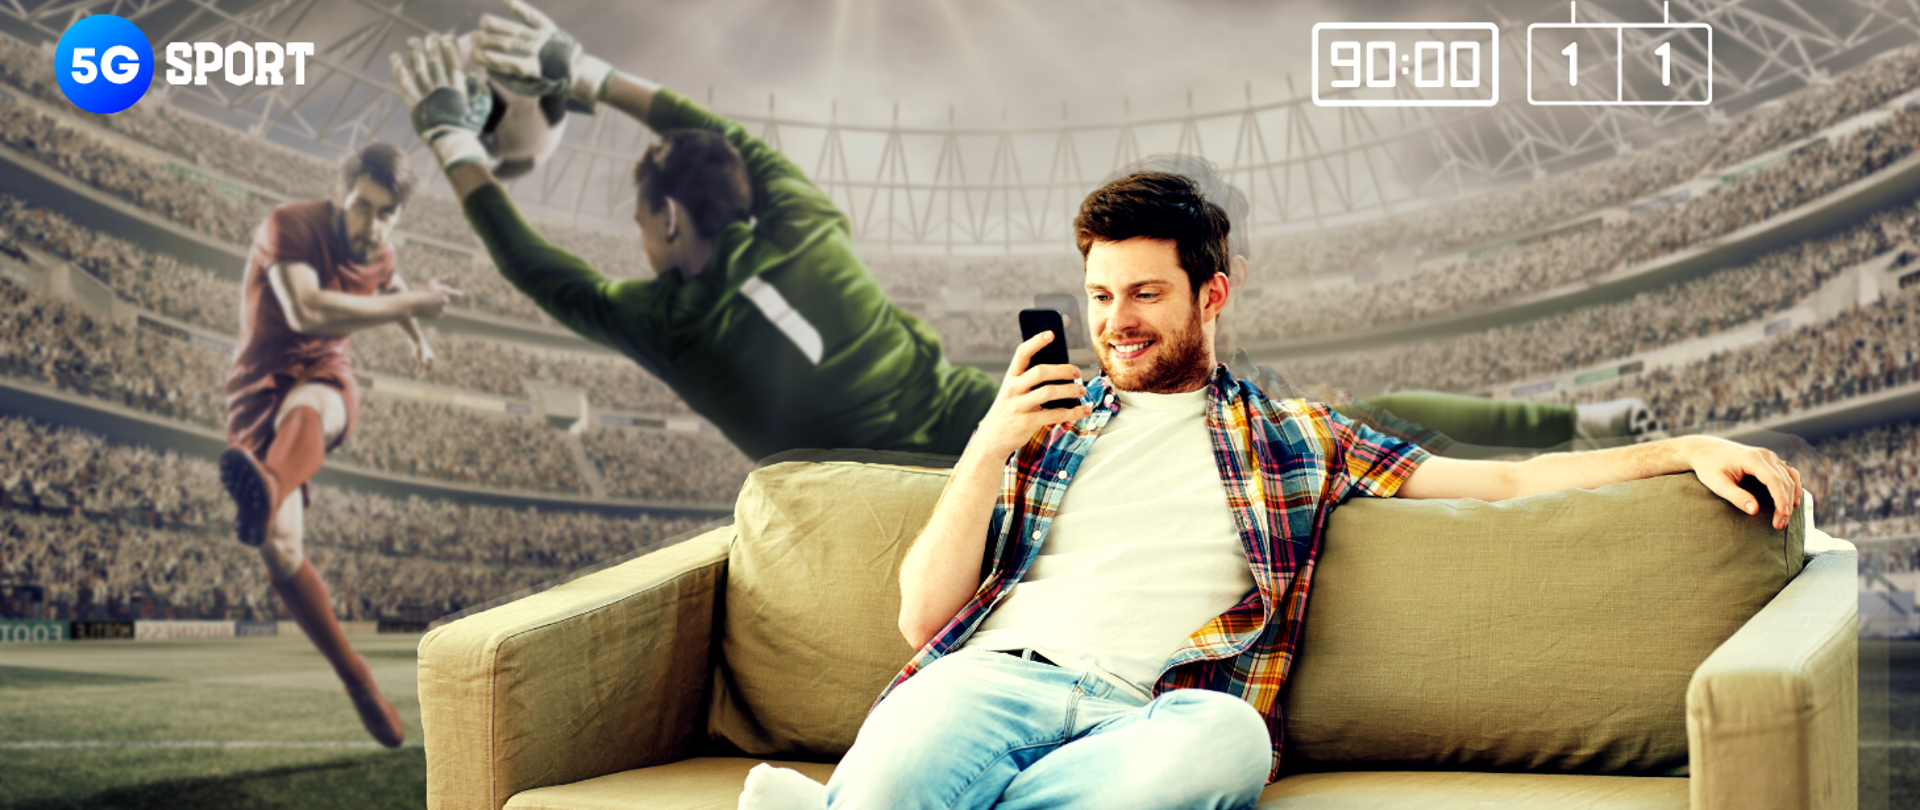 Ilustracja przedstawia mężczyznę siedzącego na kanapie pośród toczącego się meczu piłkarskiego. Grafika stylizowana na transmisję sportową.